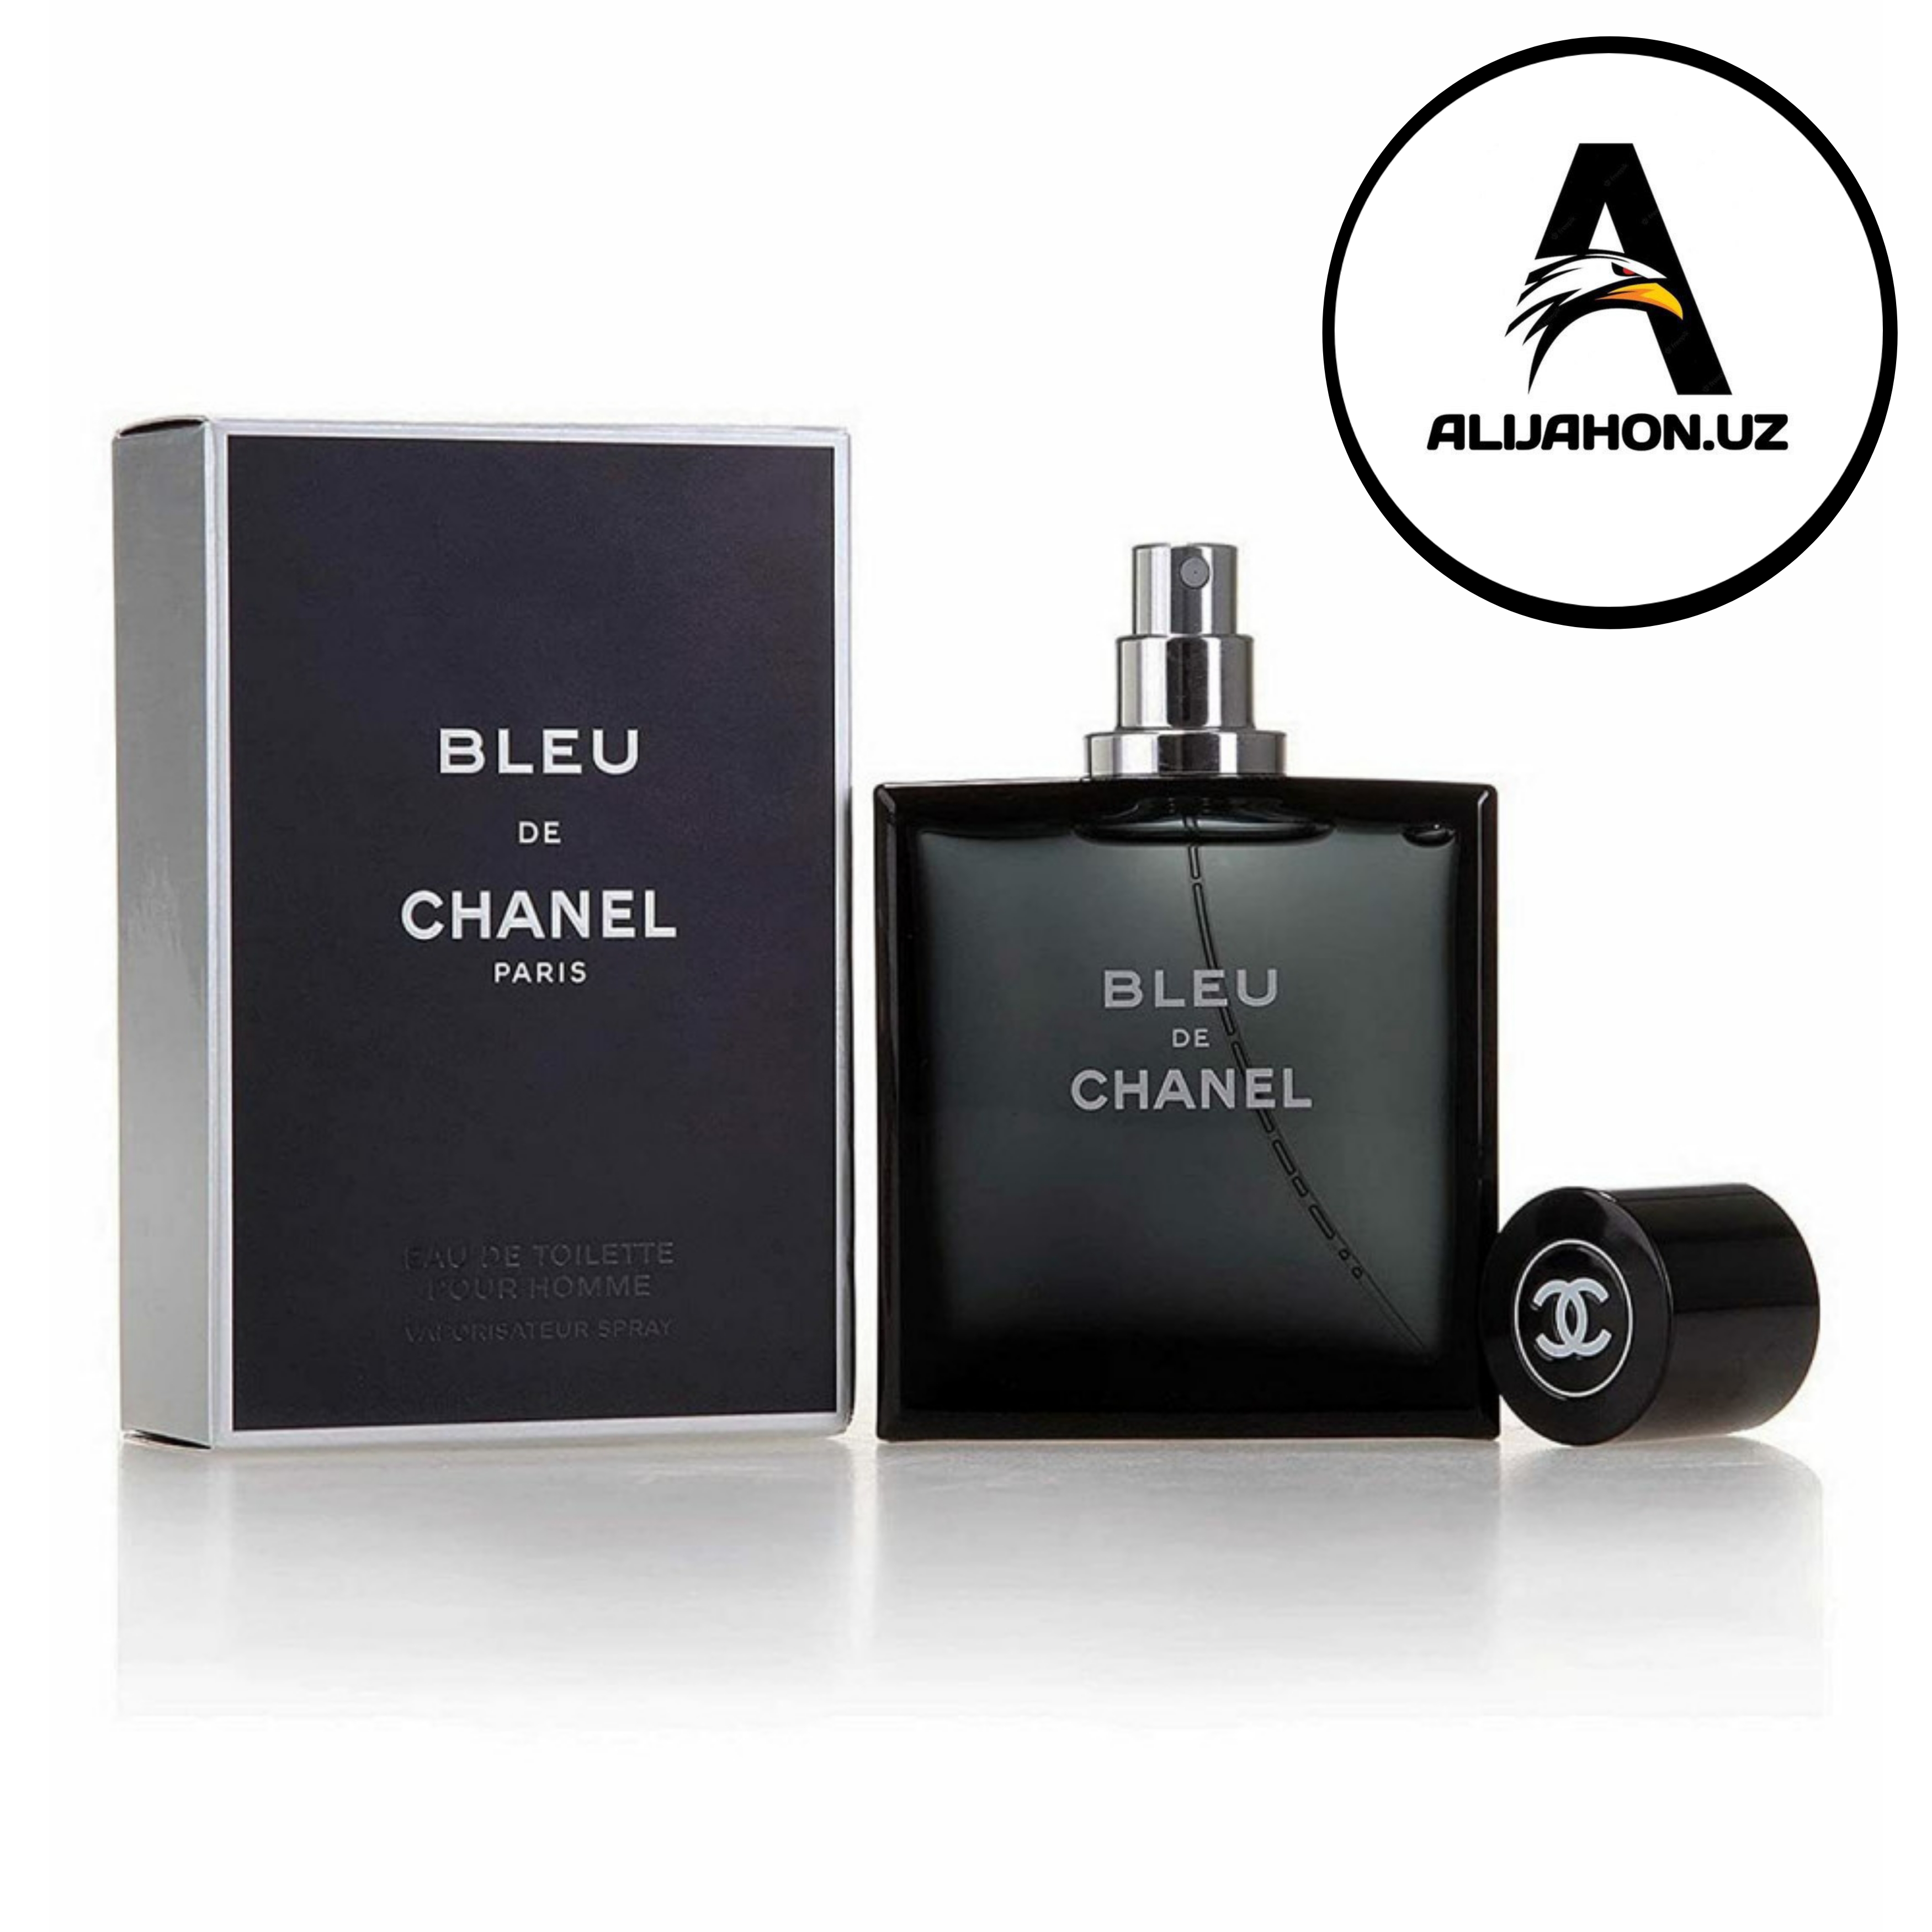 Chanel bleu отзывы. Chanel bleu de Chanel Parfum 100 ml. Blue de Chanel m (Chanel) 100m. Chanel Blue de Chanel 100ml. Бле де Шанель, 100мл,мужской Парфюм.